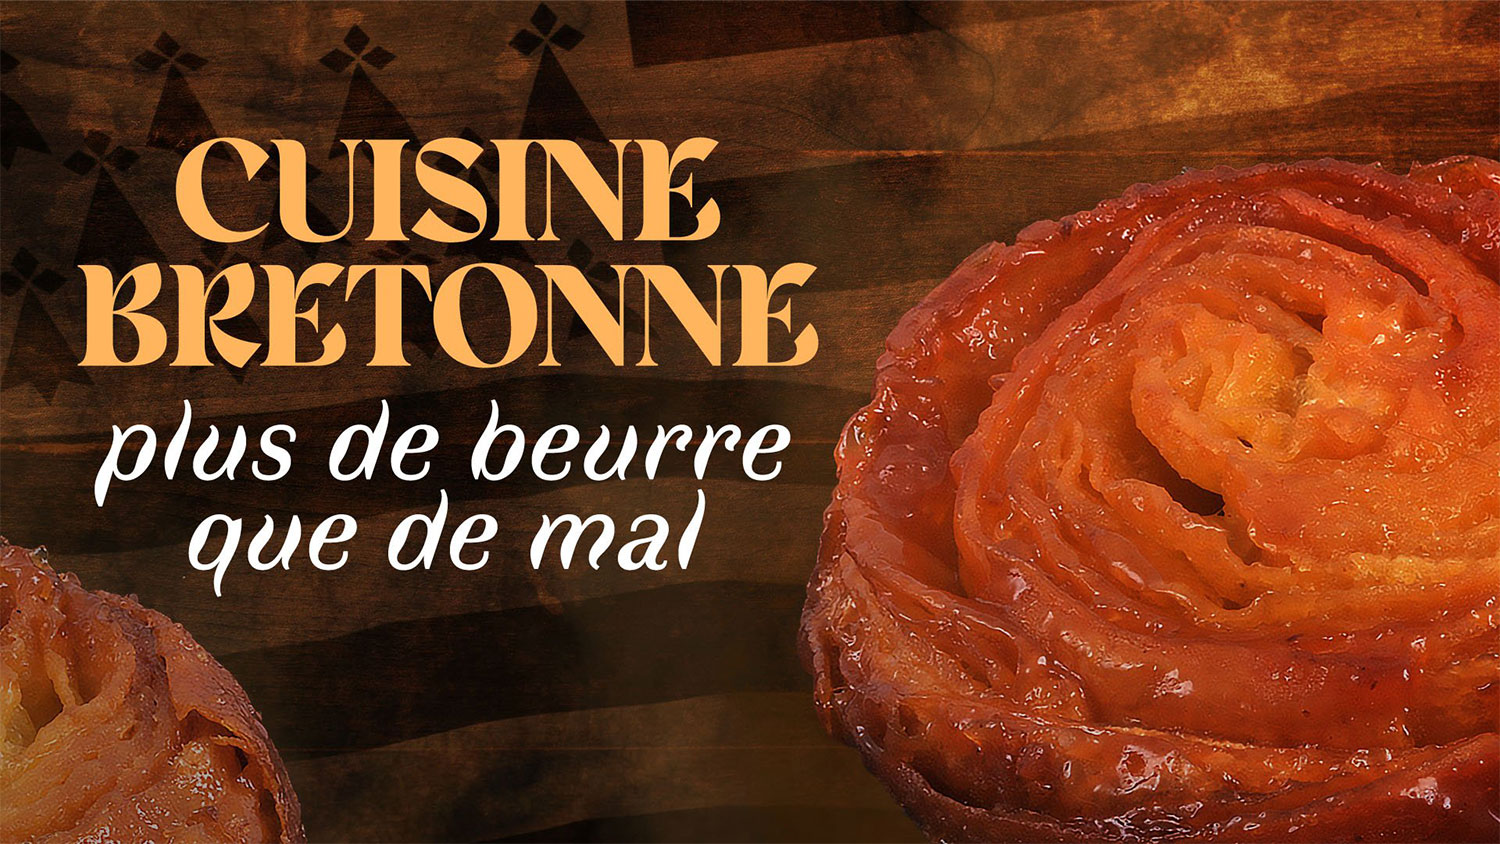 « Cuisine bretonne : plus de beurre que de mal » – France 5